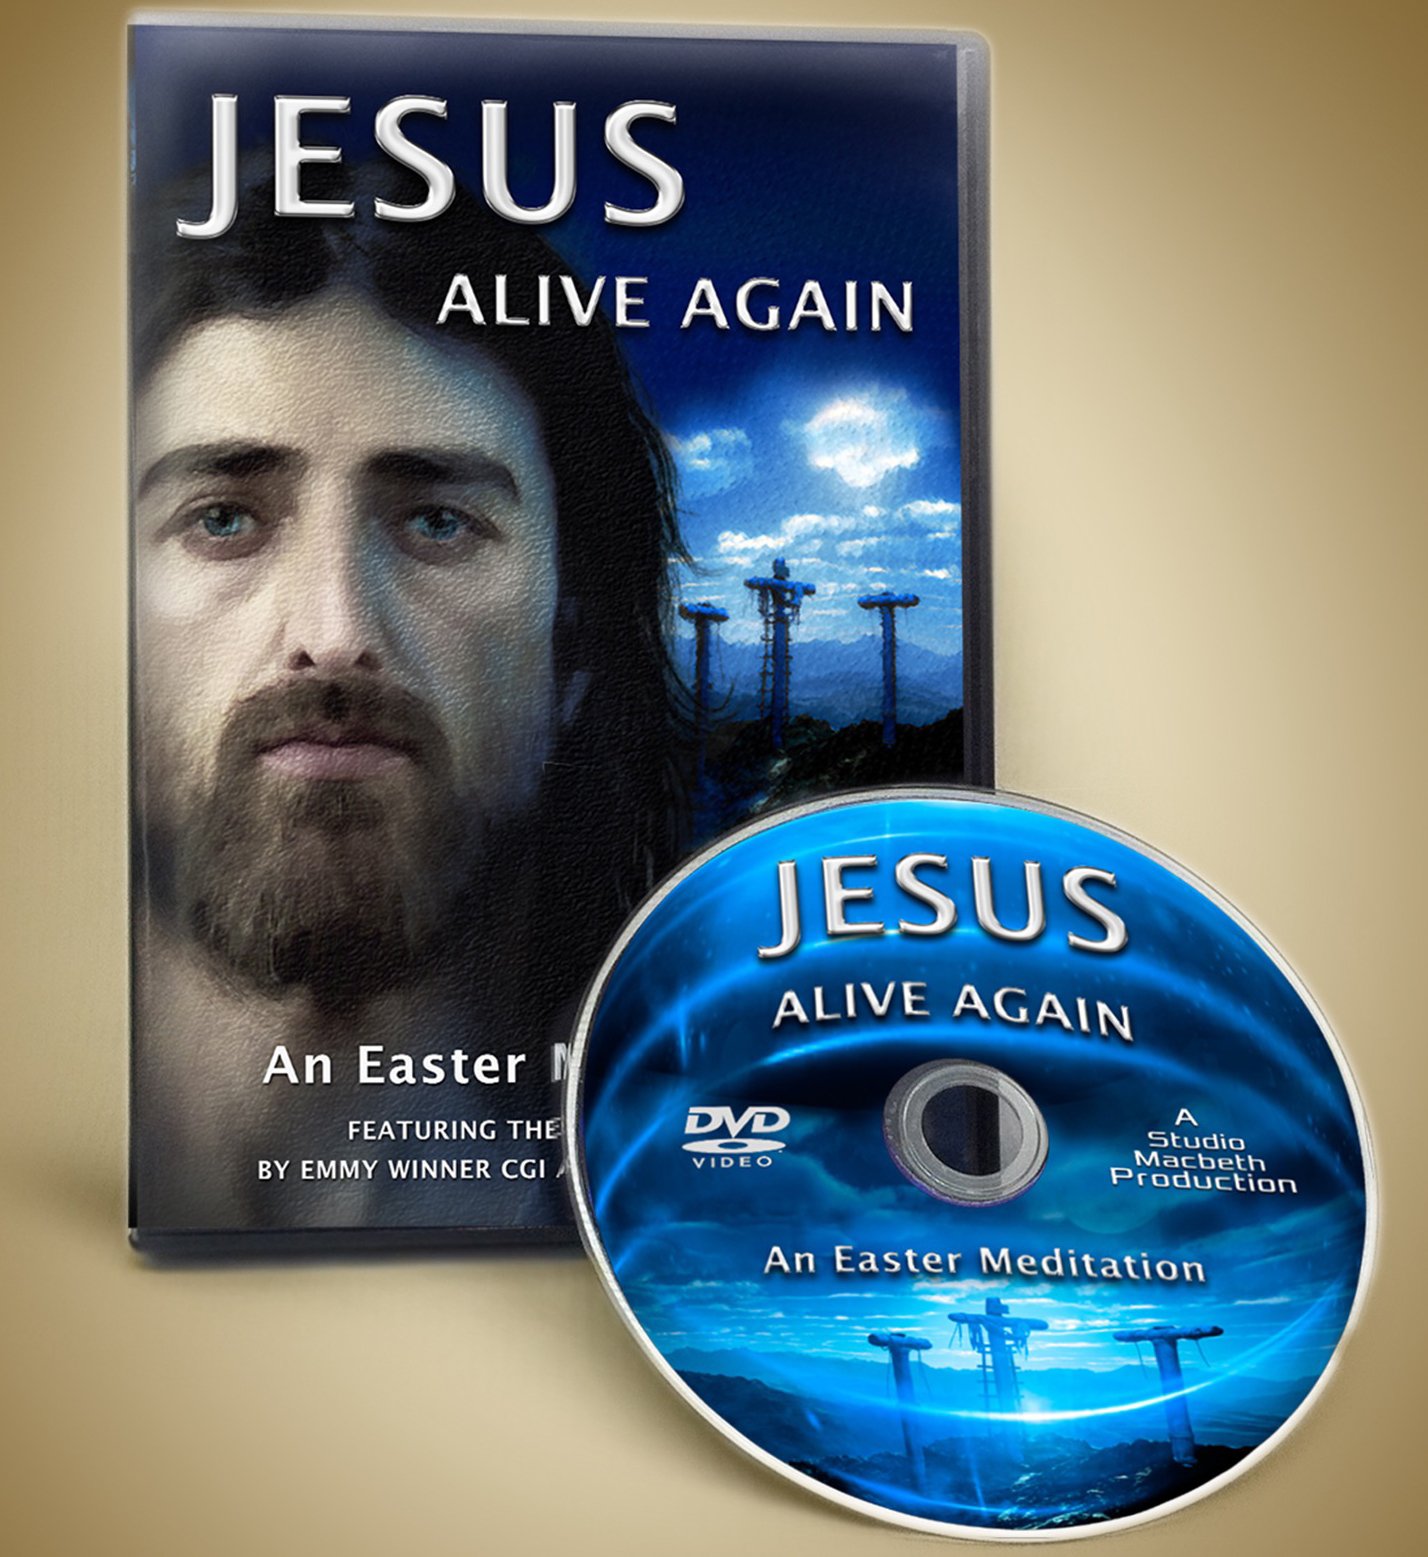 Jesus-pictures-DVD 3.jpg